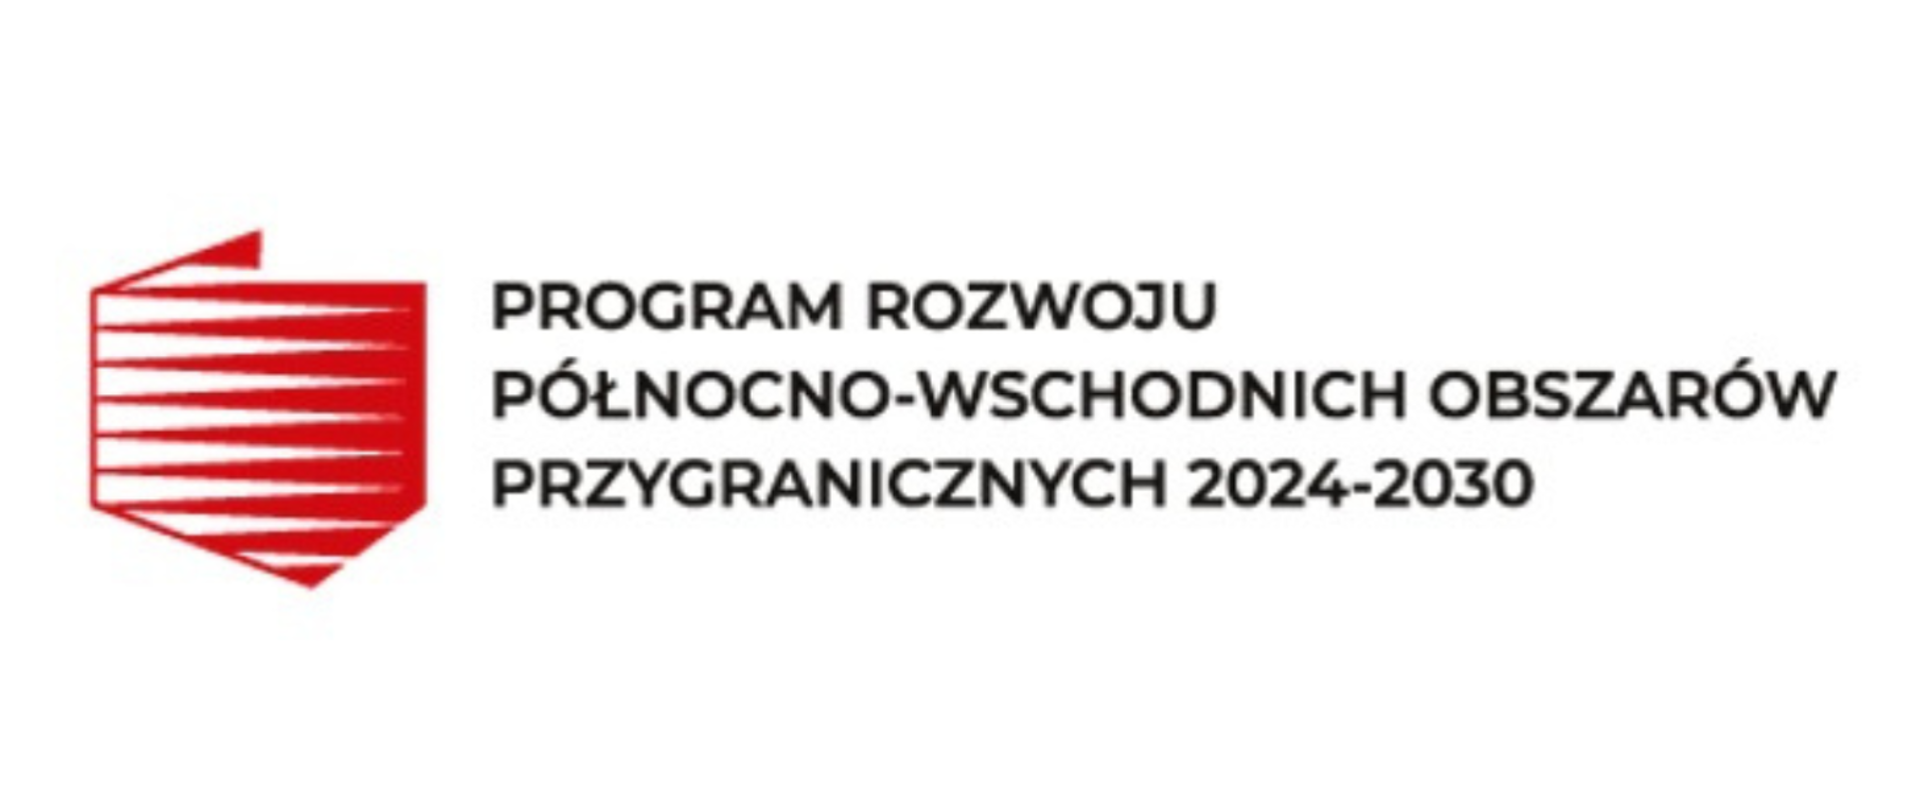 Czerwone kontury Polski wewnątrz z biało-czerwonymi pasami. Po prawej napis: Program rozwoju północno-wschodnich obszarów przygranicznych 2024-2030